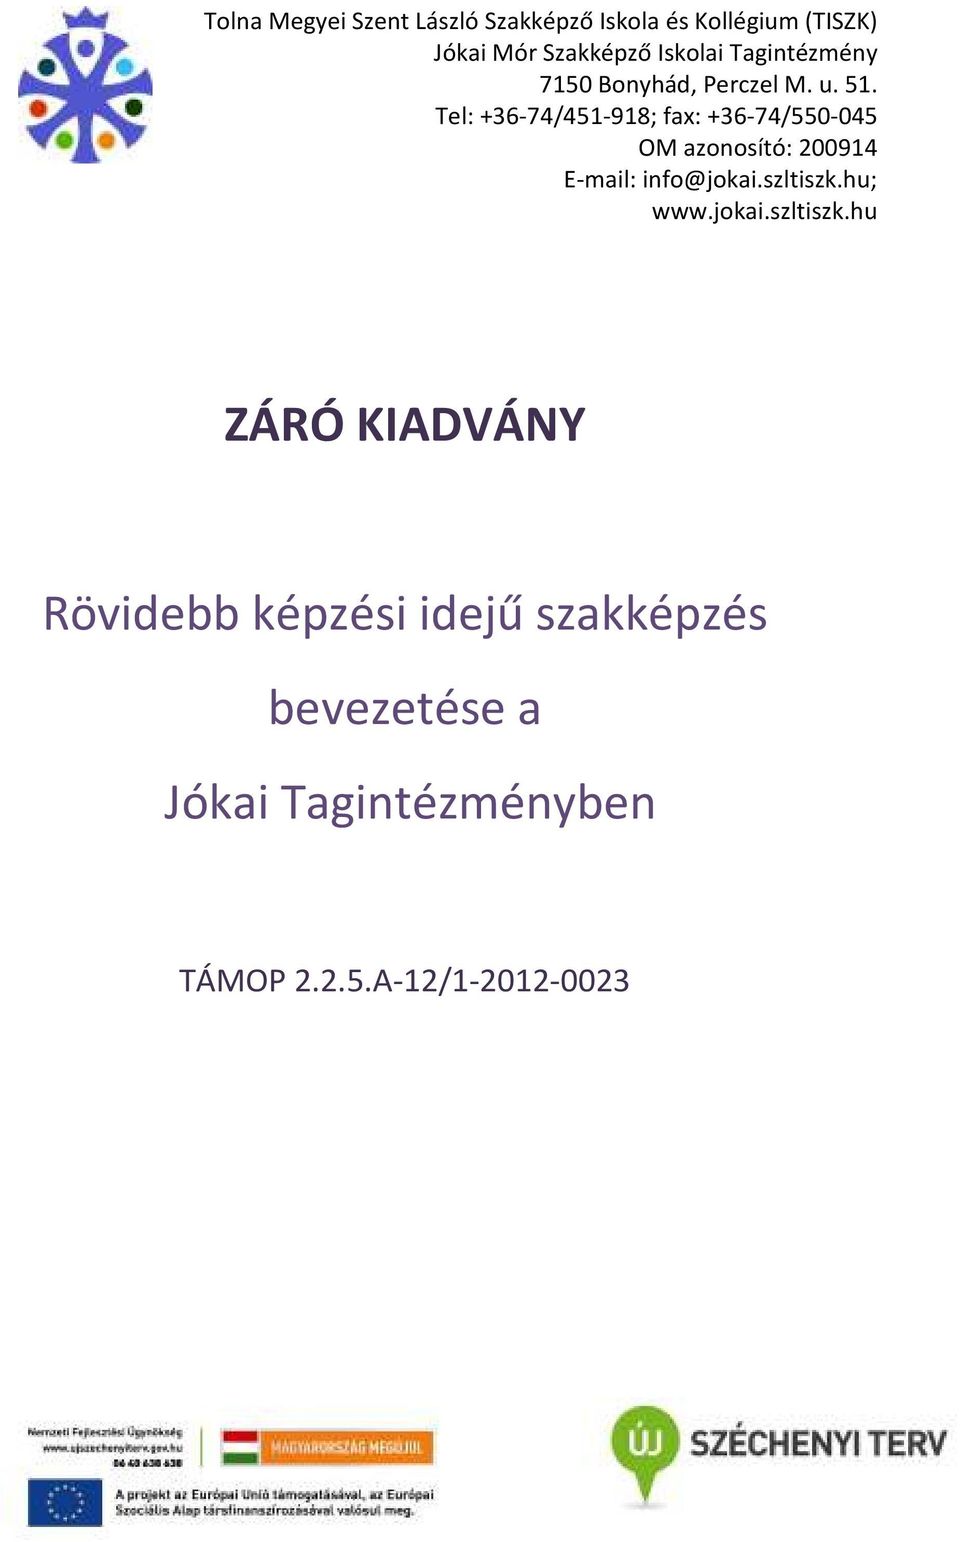 Tel: +36-74/451-918; fax: +36-74/550-045 OM azonosító: 200914 E-mail: info@jokai.szltiszk.